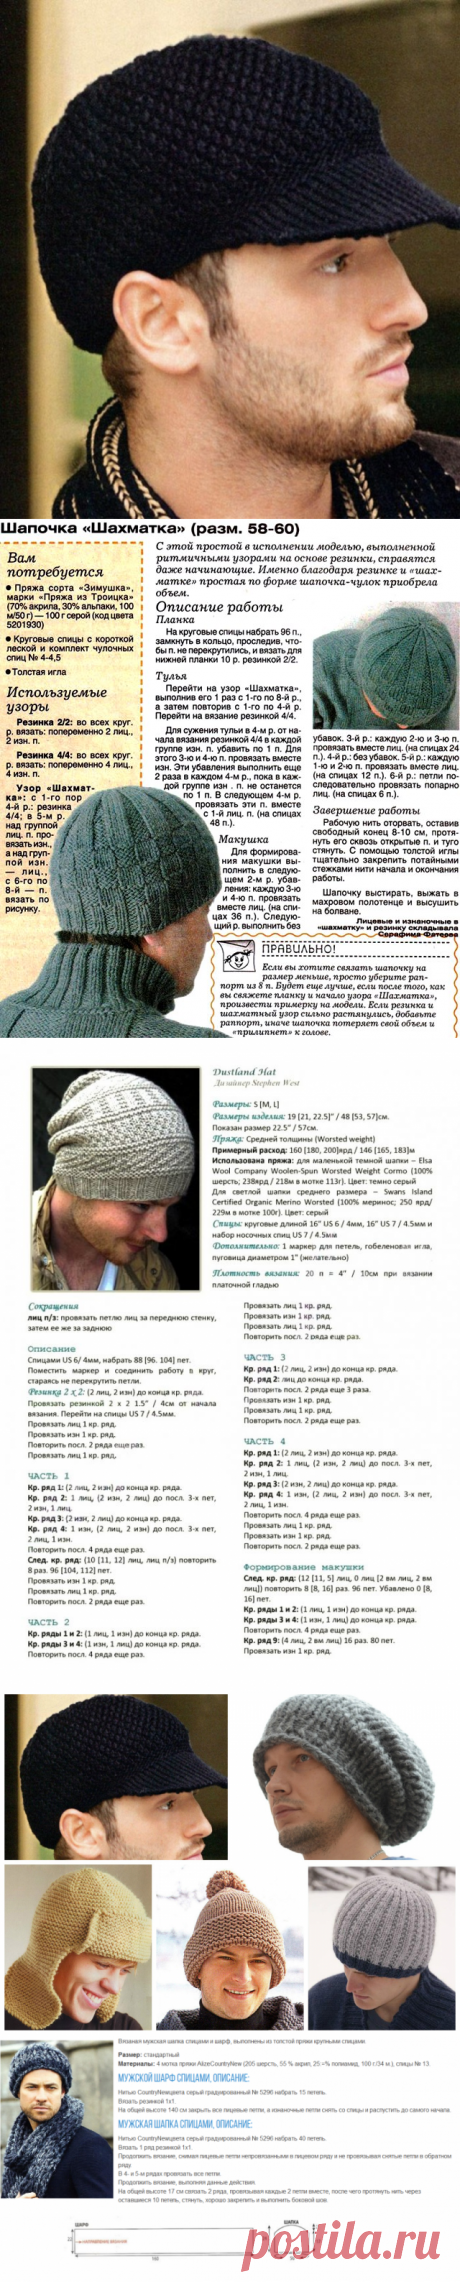 Мужские вязаные шапки спицами и крючком: описание и схема вязания. Как связать модную мужскую шапку спицами двойную, ушанку, с отворотом, «Зигзаг удачи», бини?